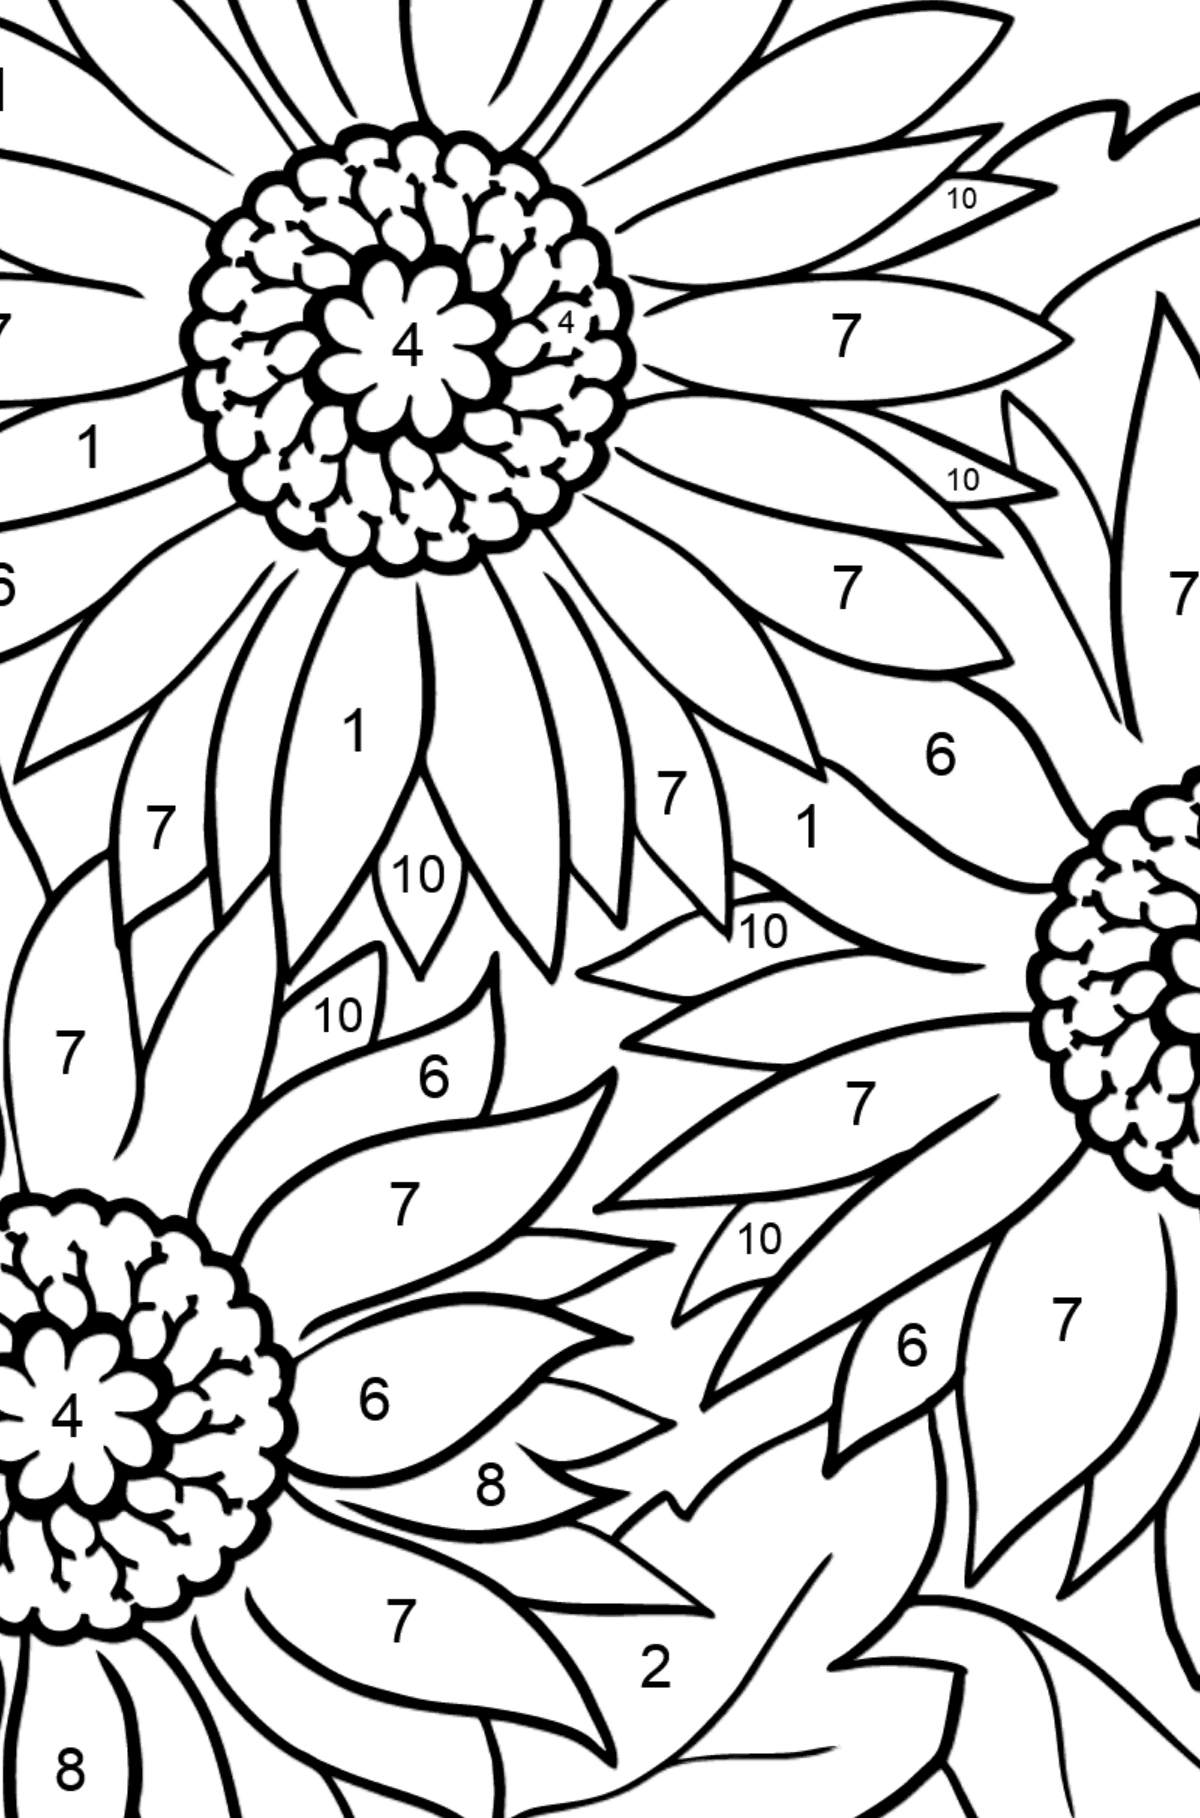 Kolorowanka Kwiat Gerber - Koloruj według numerów dla dzieci